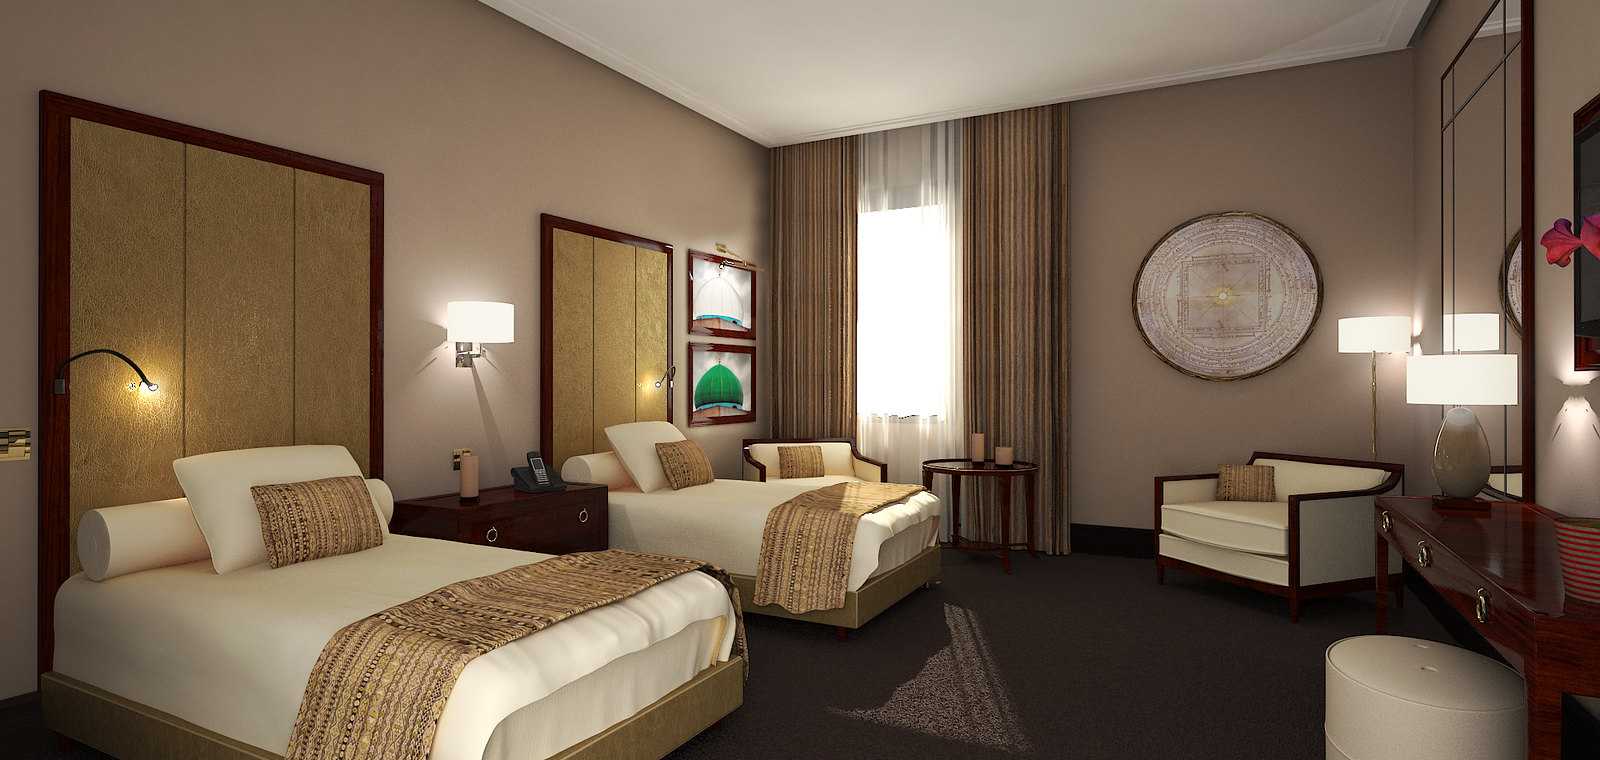 Rèm khách sạn, nhà nghỉ đẹp giúp tăng tính sang trọng cho không gian